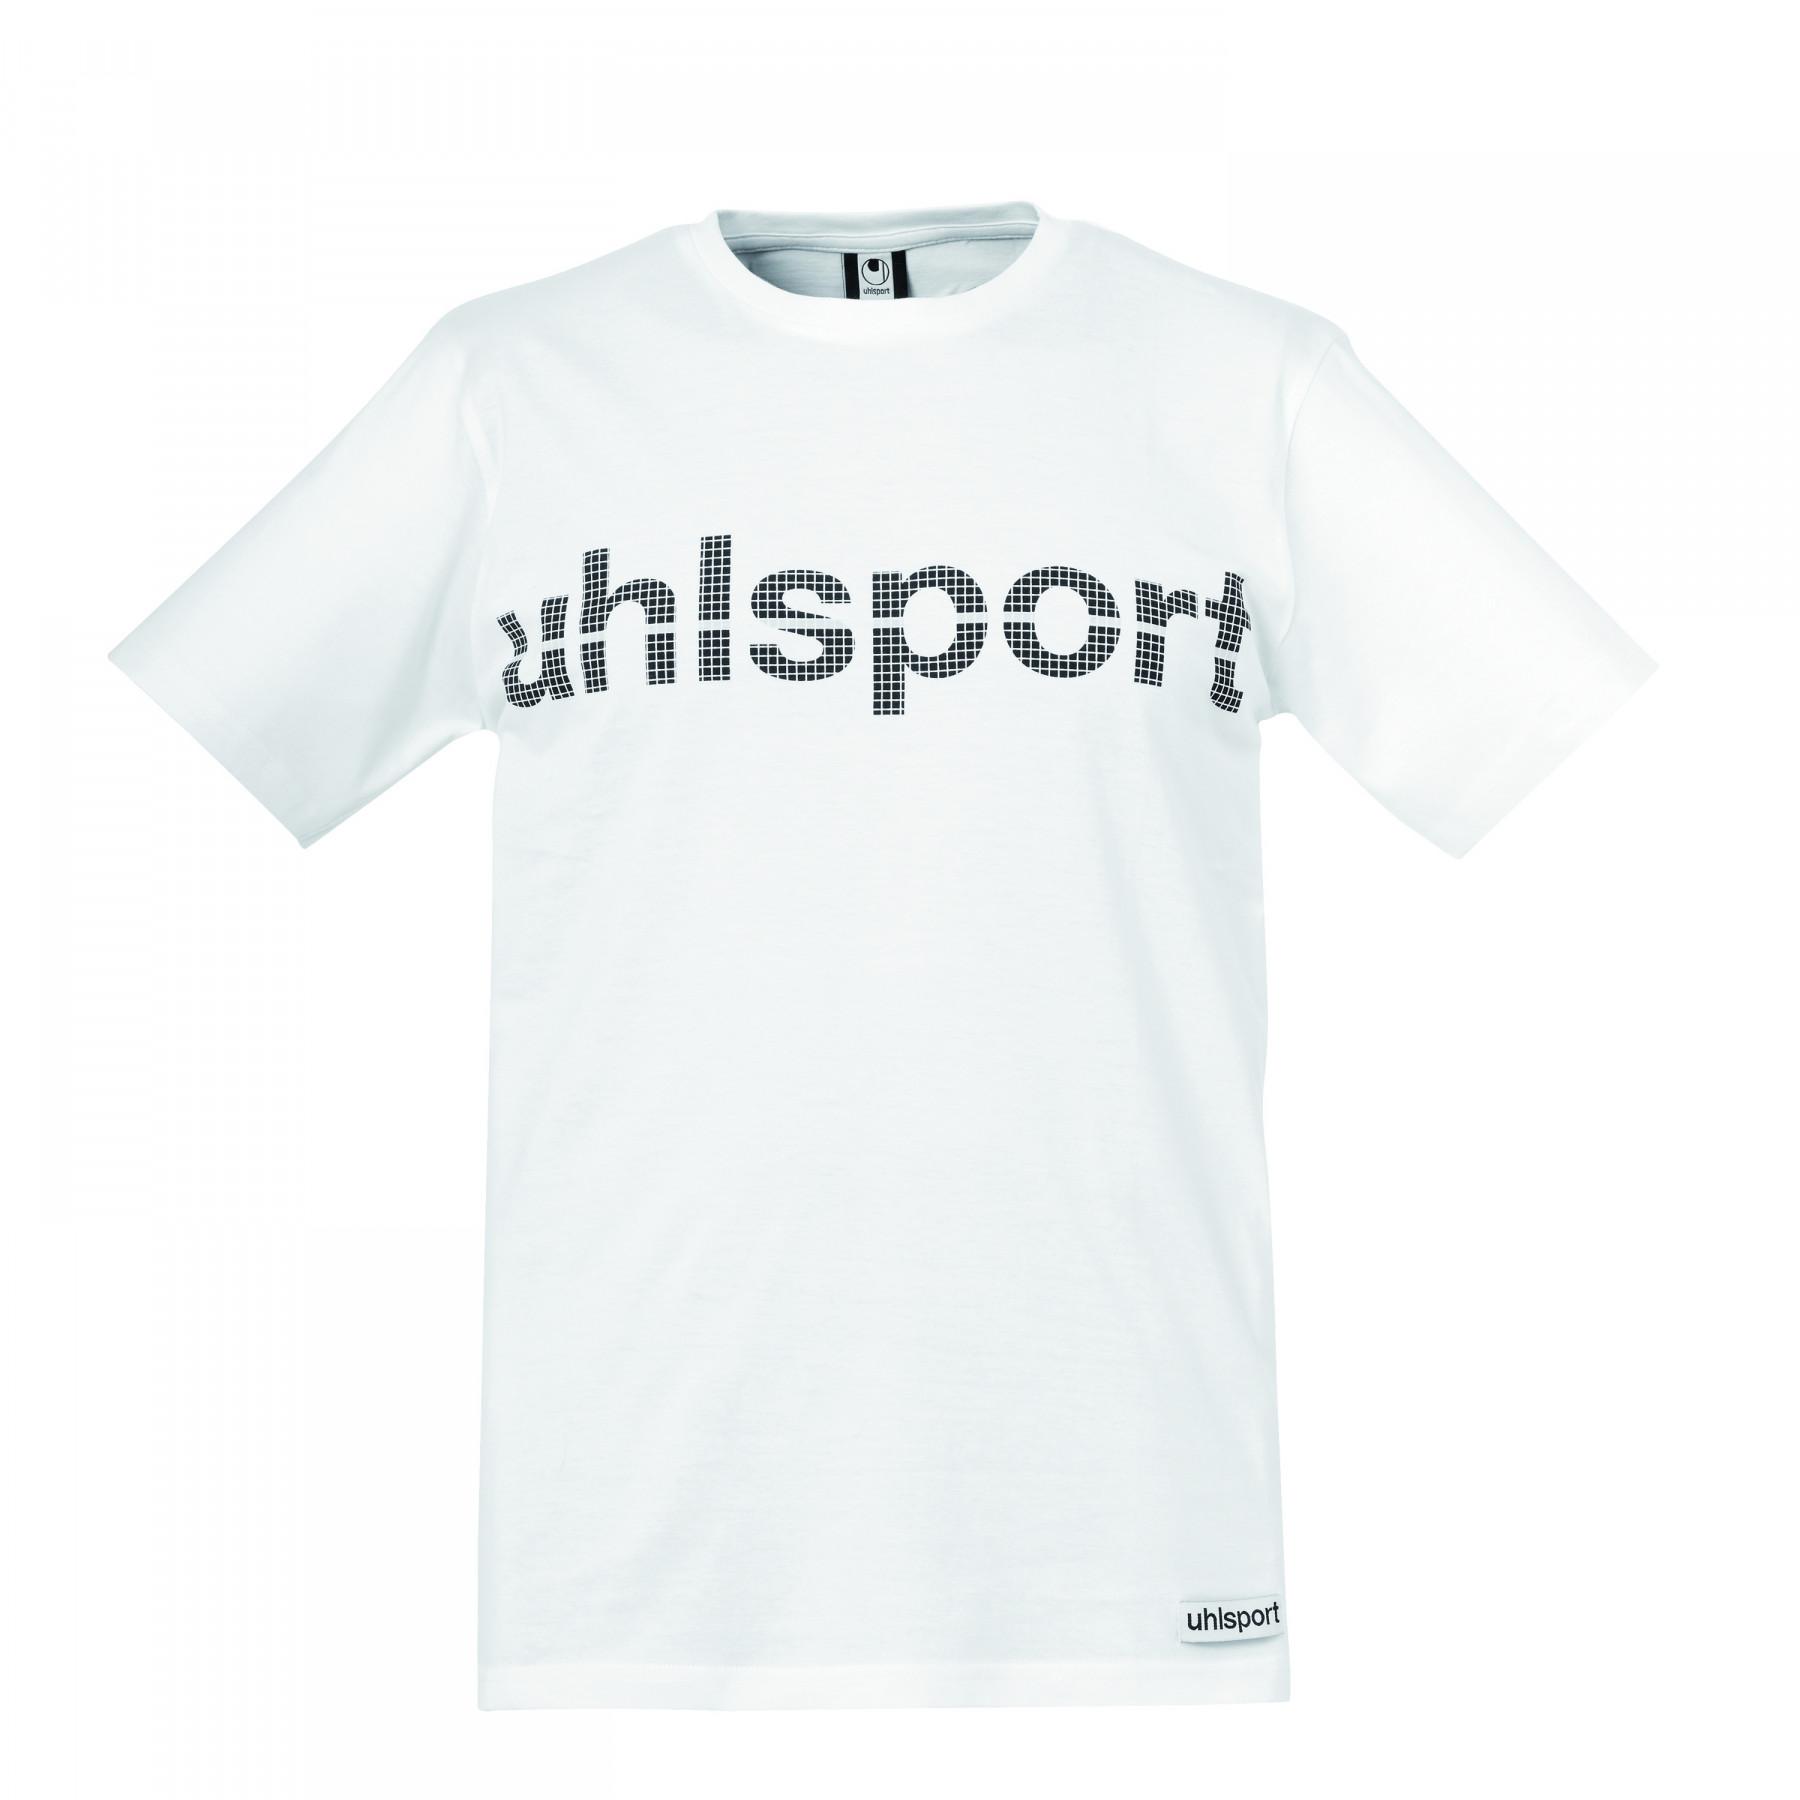 Camiseta Promo Uhlsport Essential